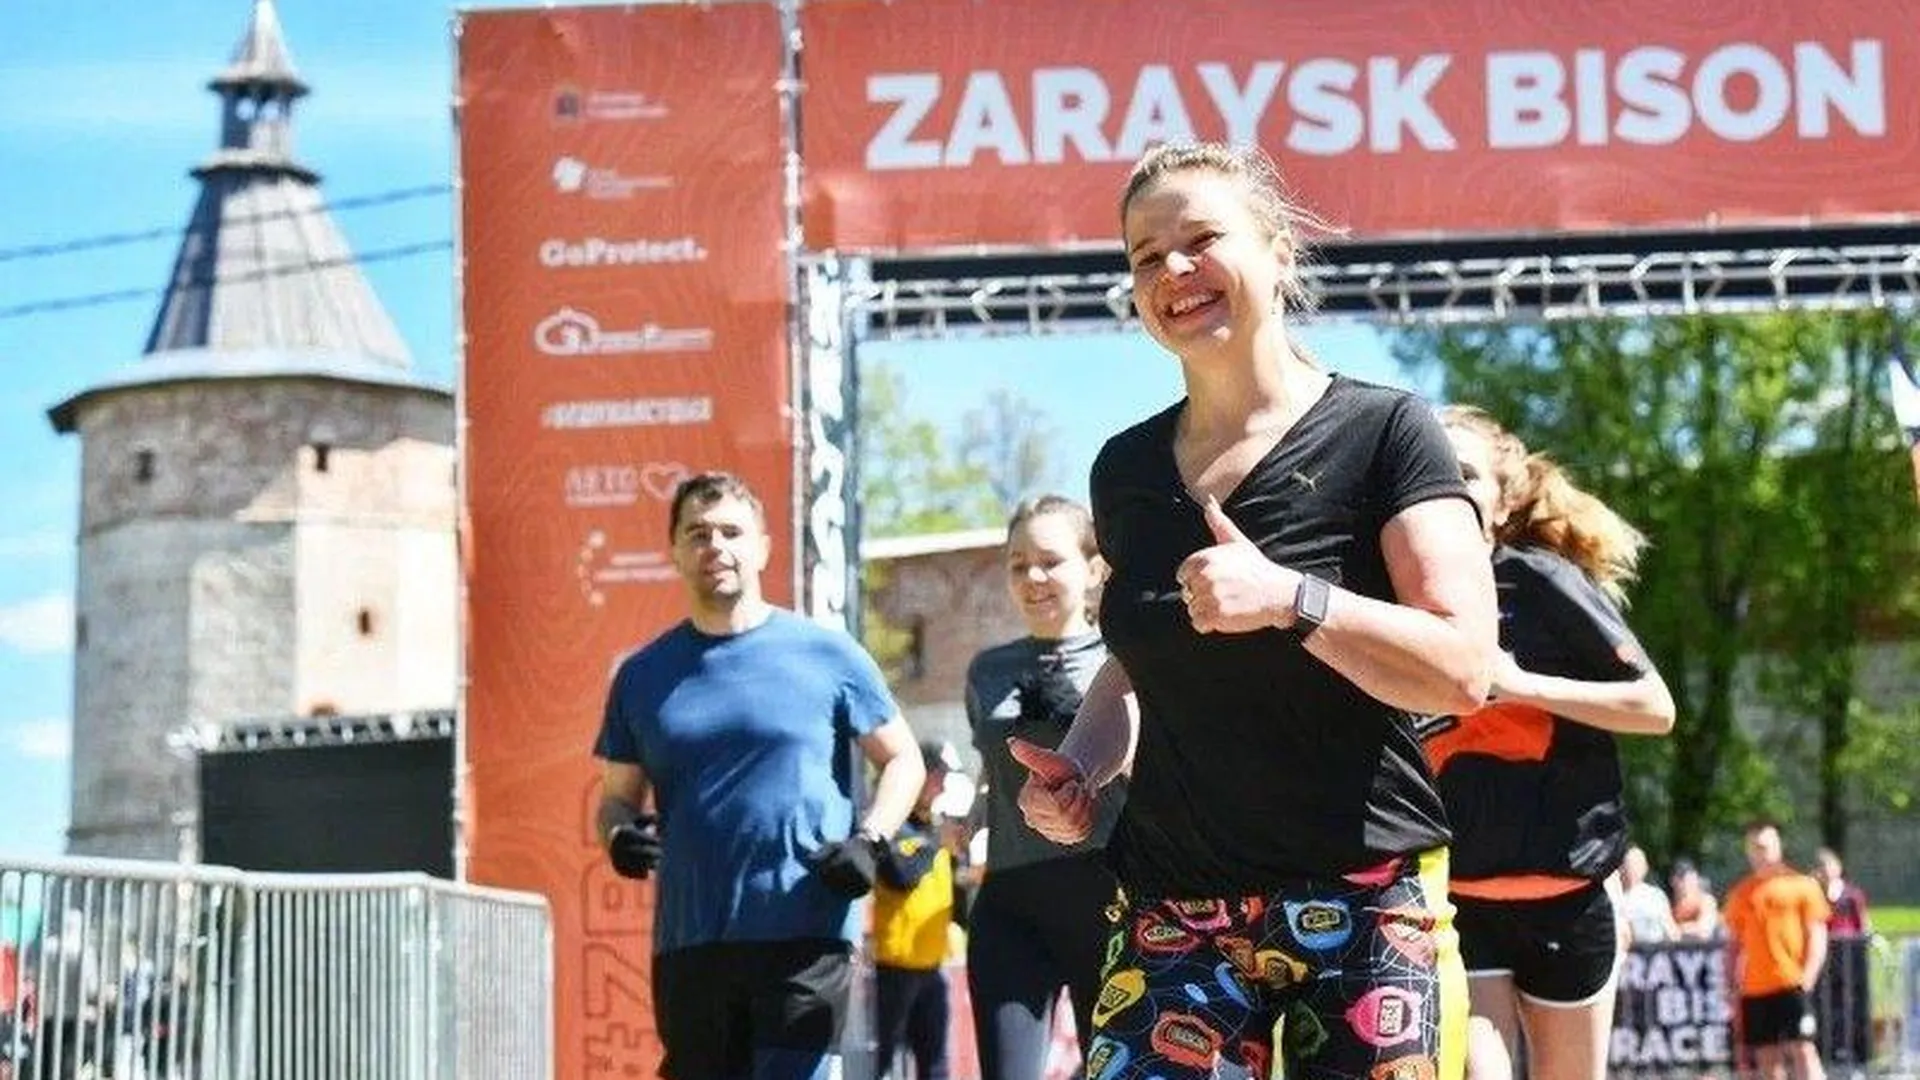 Экстремальный исторический забег «Zaraysk Bison Race» прошел в Зарайске